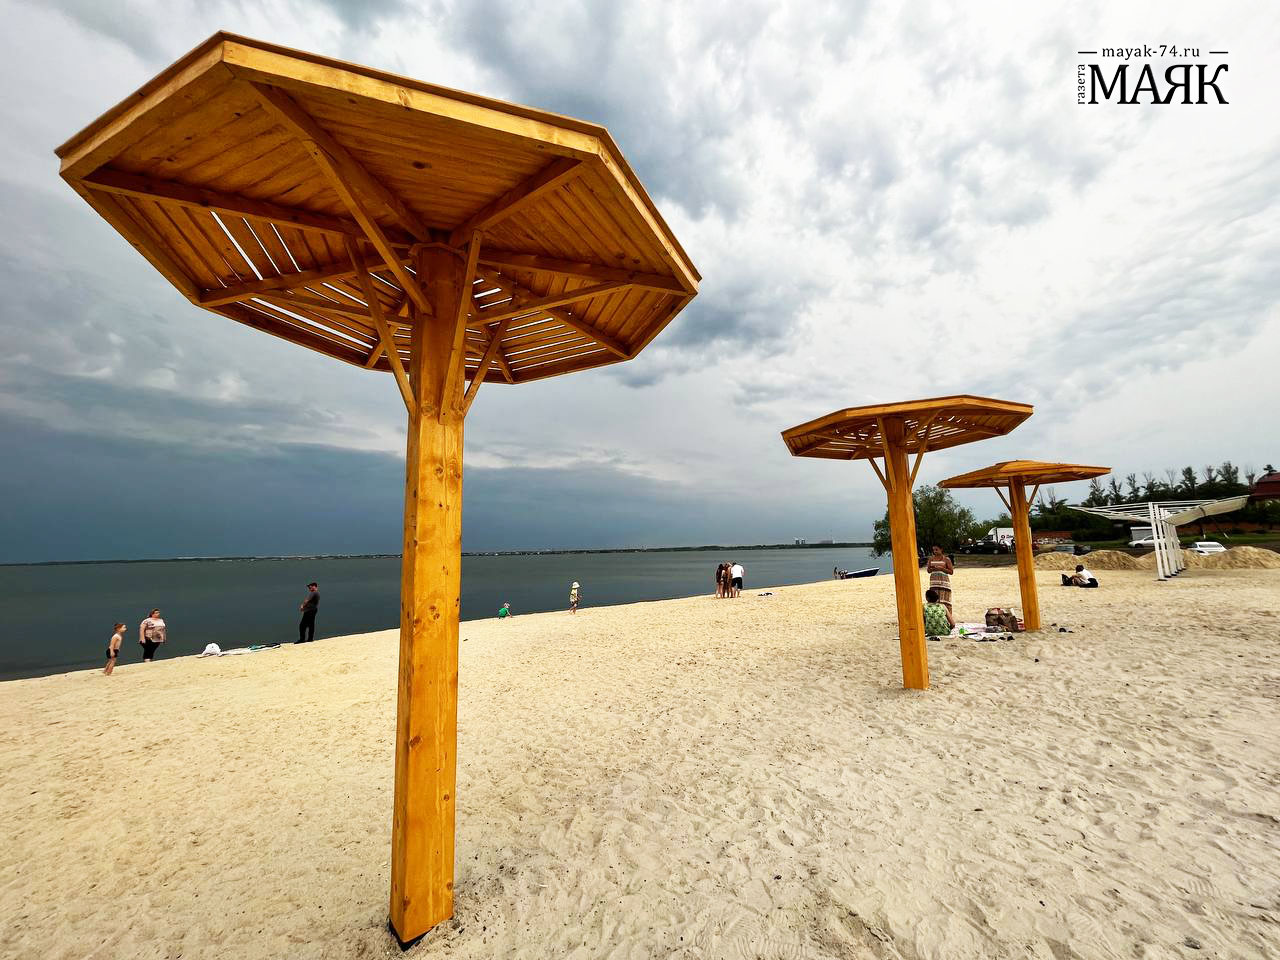 Муниципальный пляж со всеми удобствами скоро откроется в Красноармейском районе